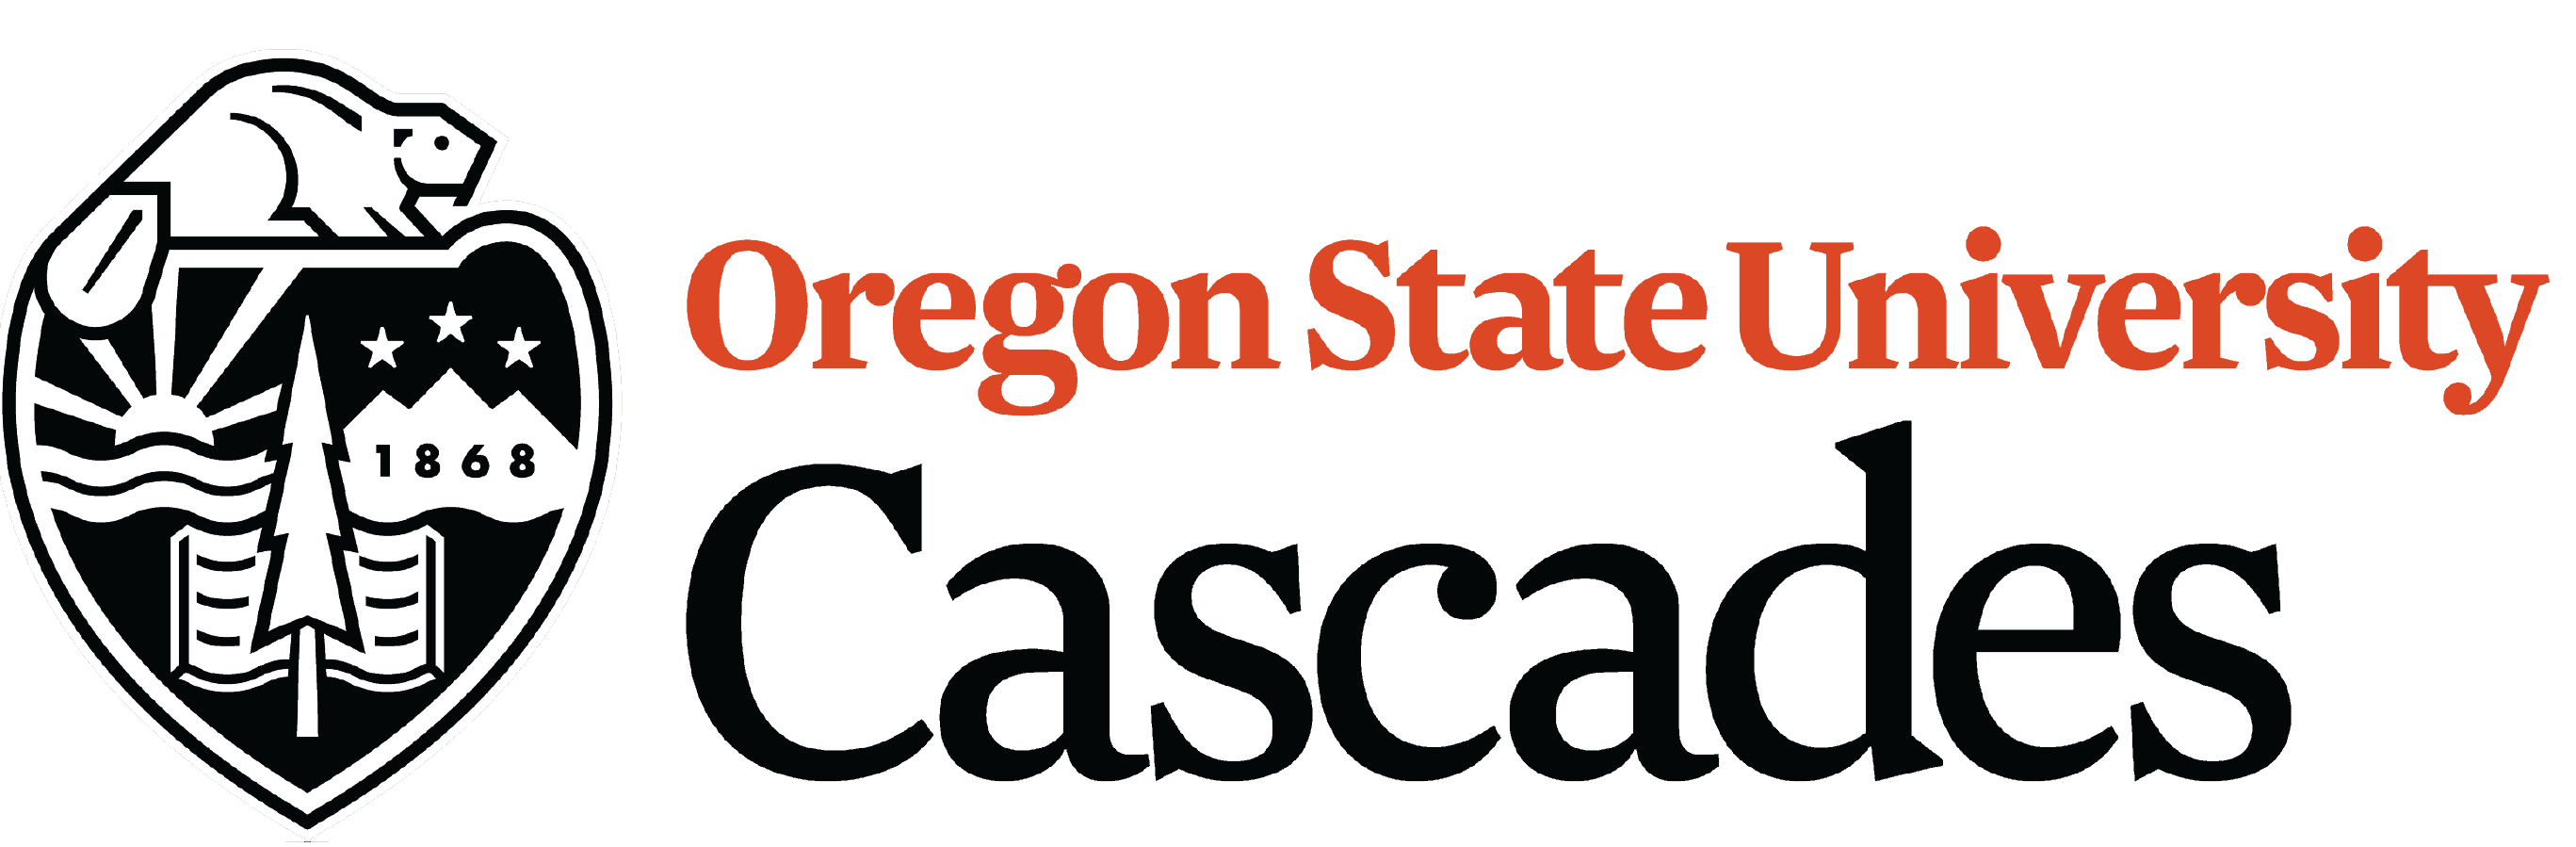 OSU-Cascades Logo